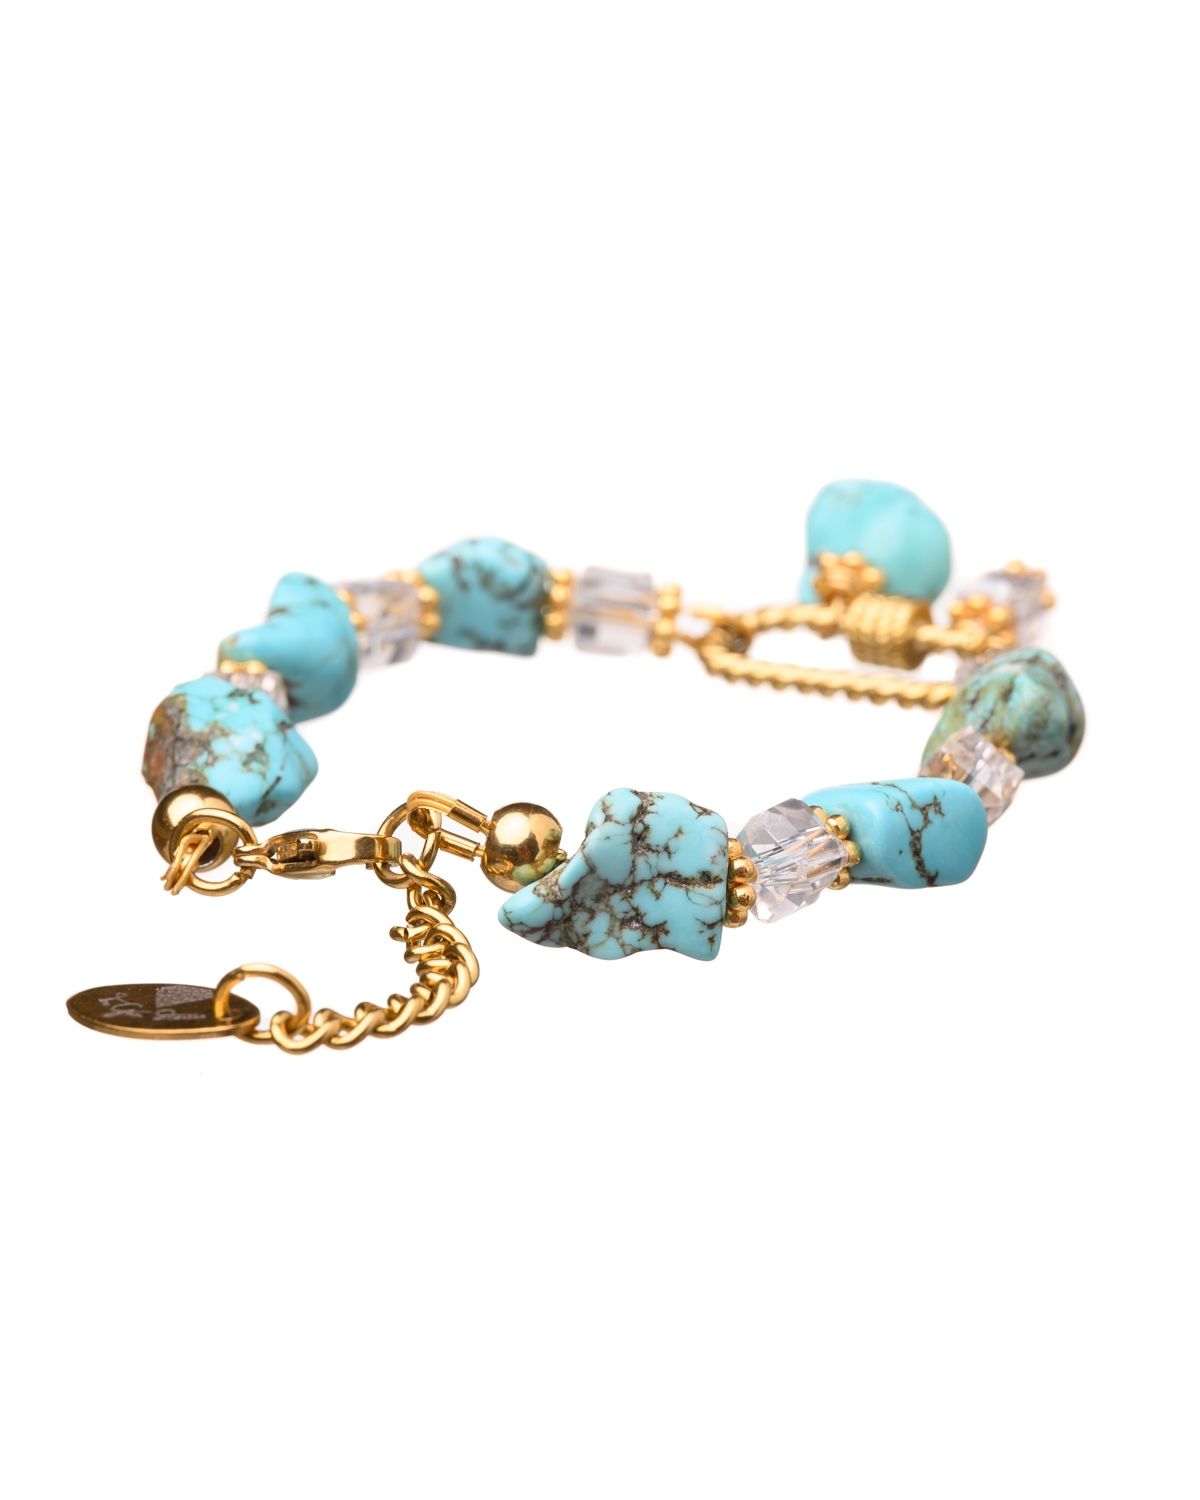 Turquoise Bracelet with locket element